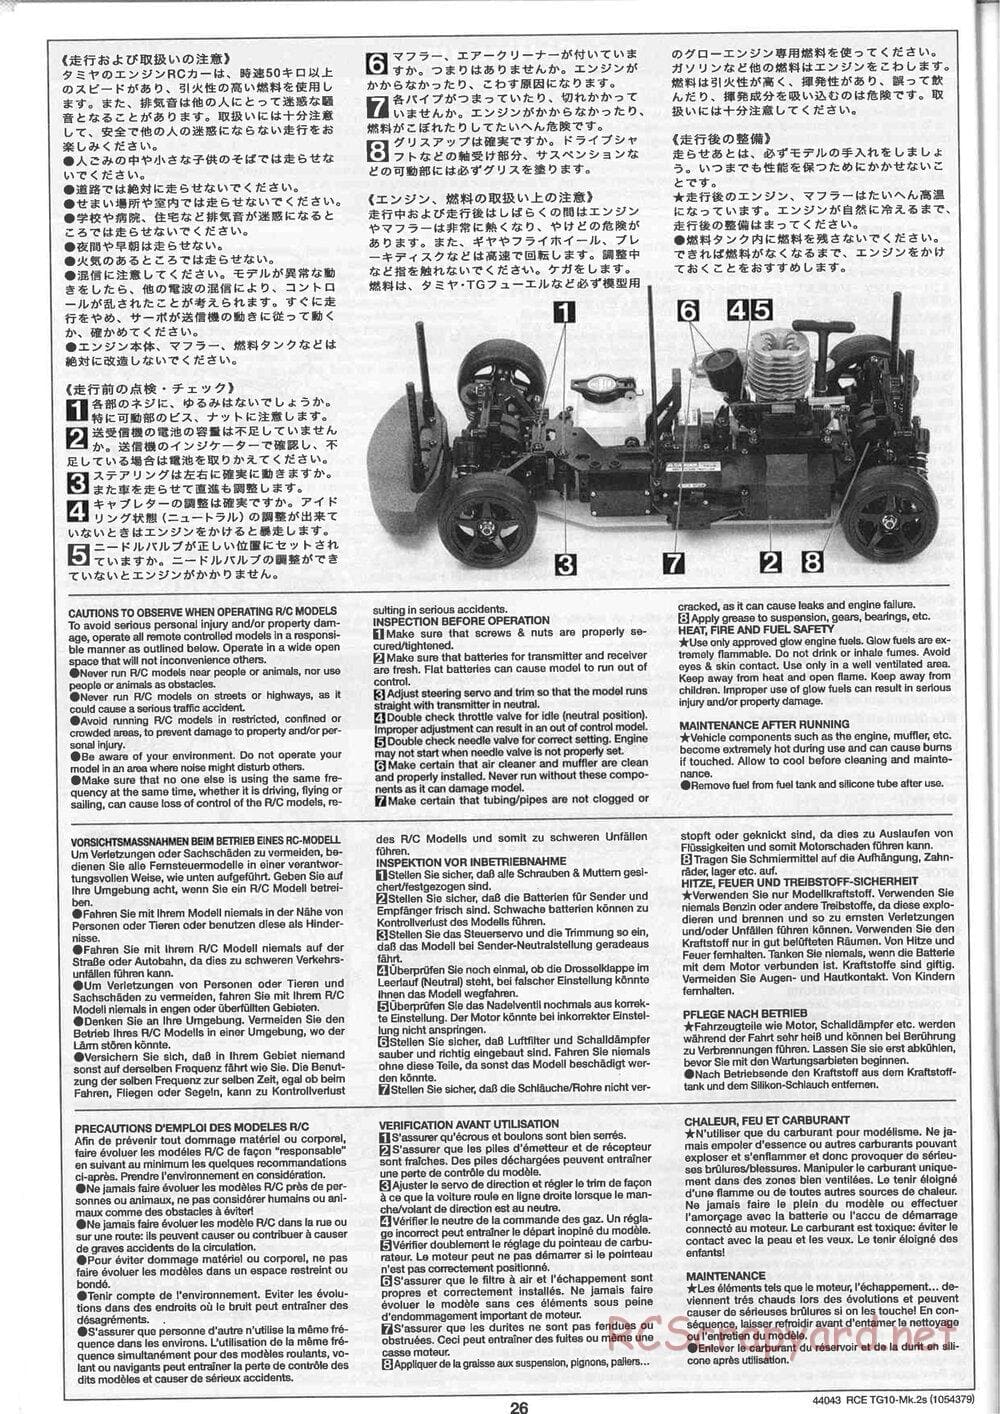 Tamiya - TG10 Mk.2s Chassis - Manual - Page 27